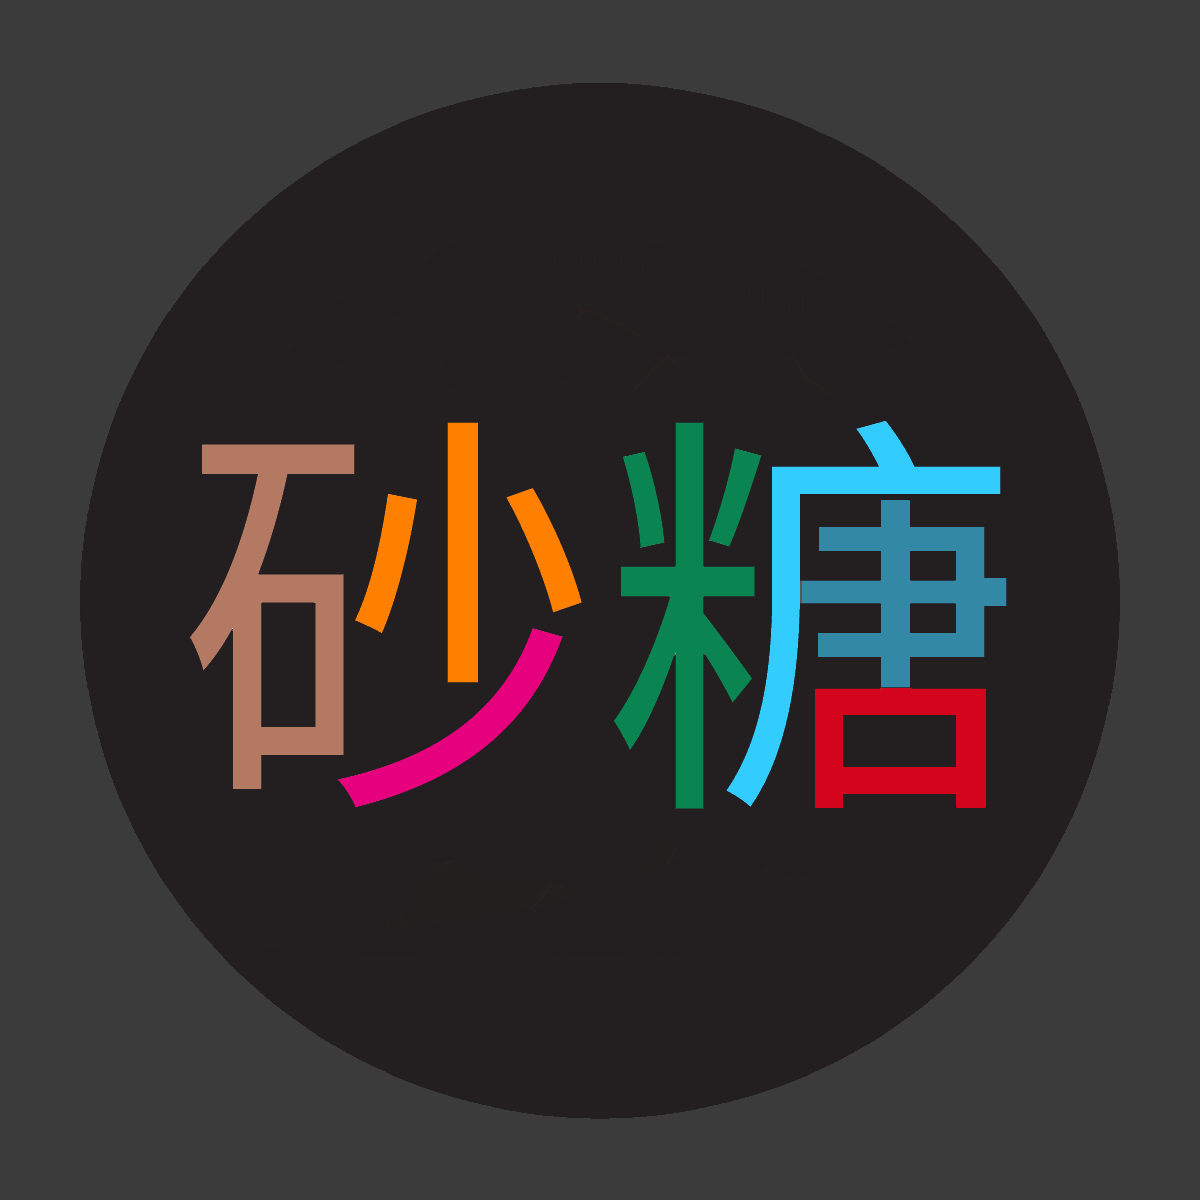 japanese alphabet duolingo